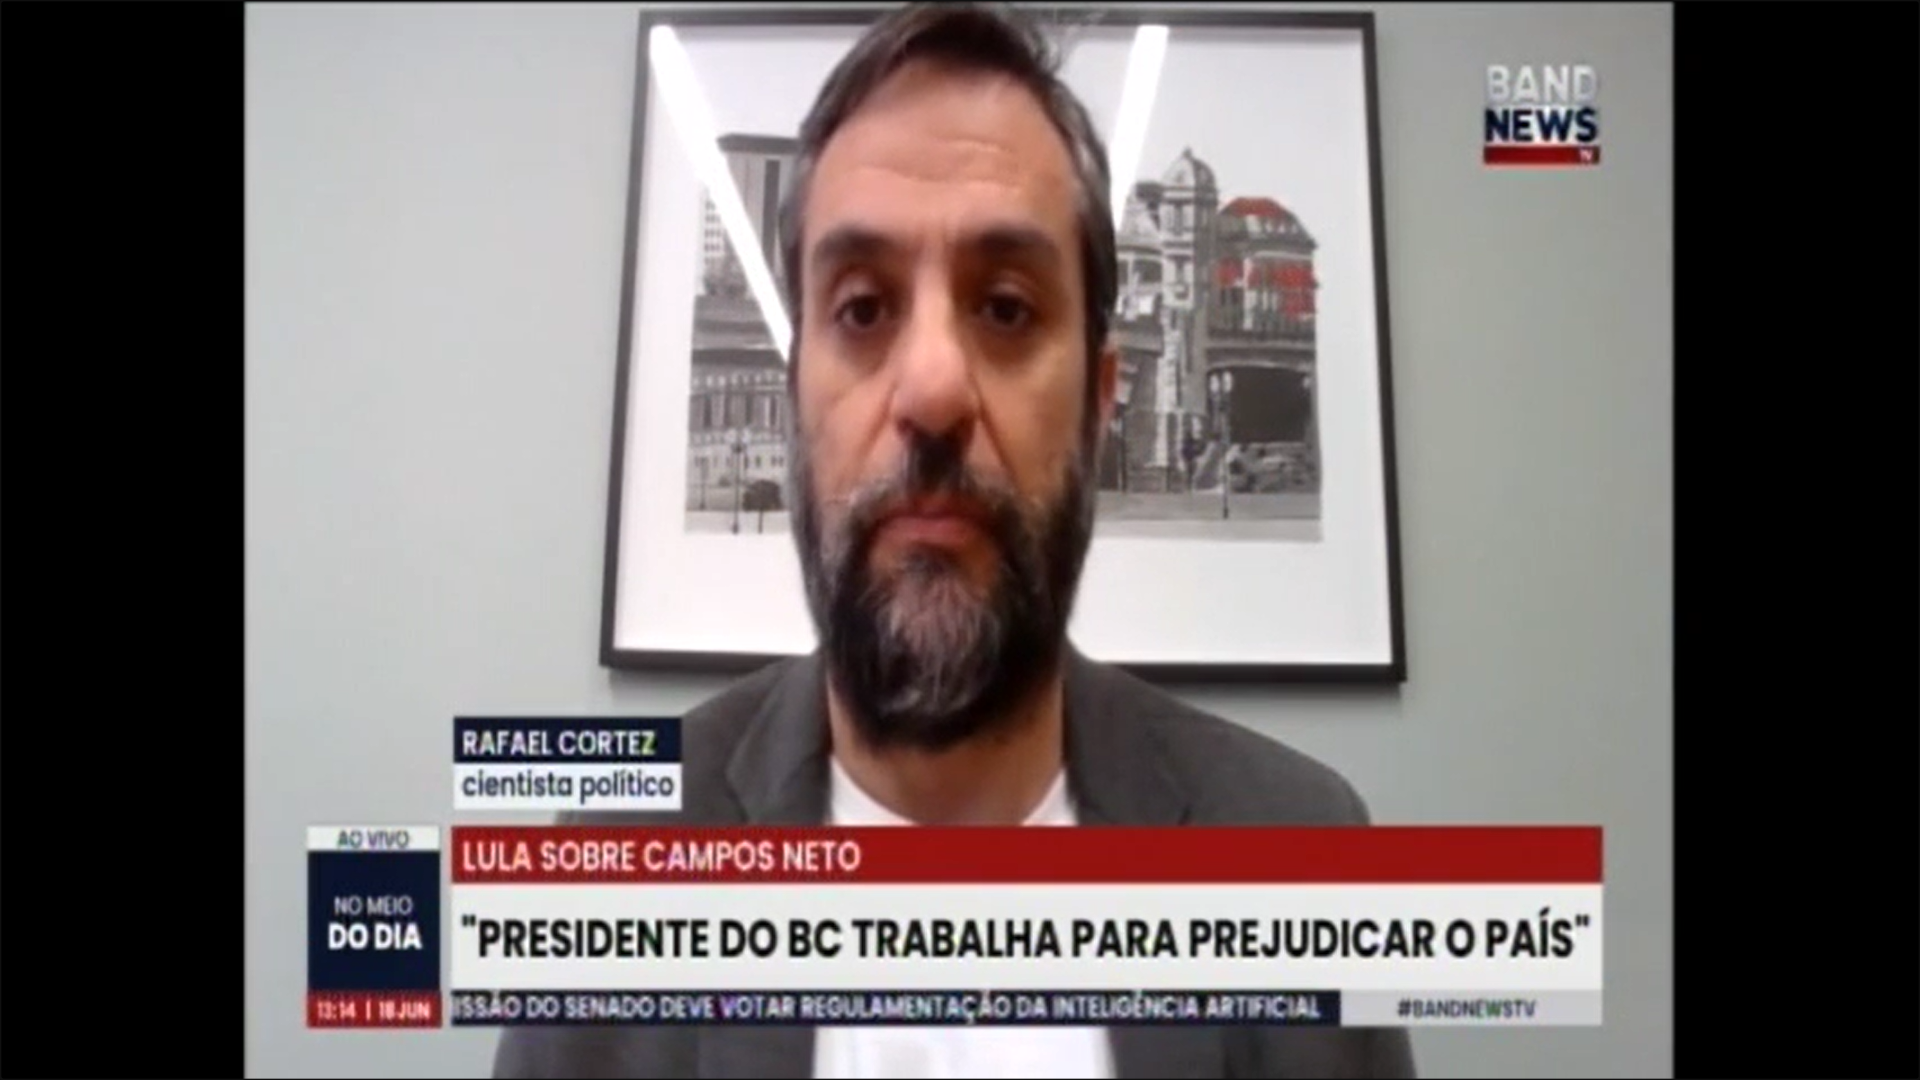 Lula sobre Campos Neto: Presidente do BC trabalha para prejudicar o País. Entrevista com Rafael Cortez, Cientista Político e Sócio da Tendências Consultoria - TV Band News